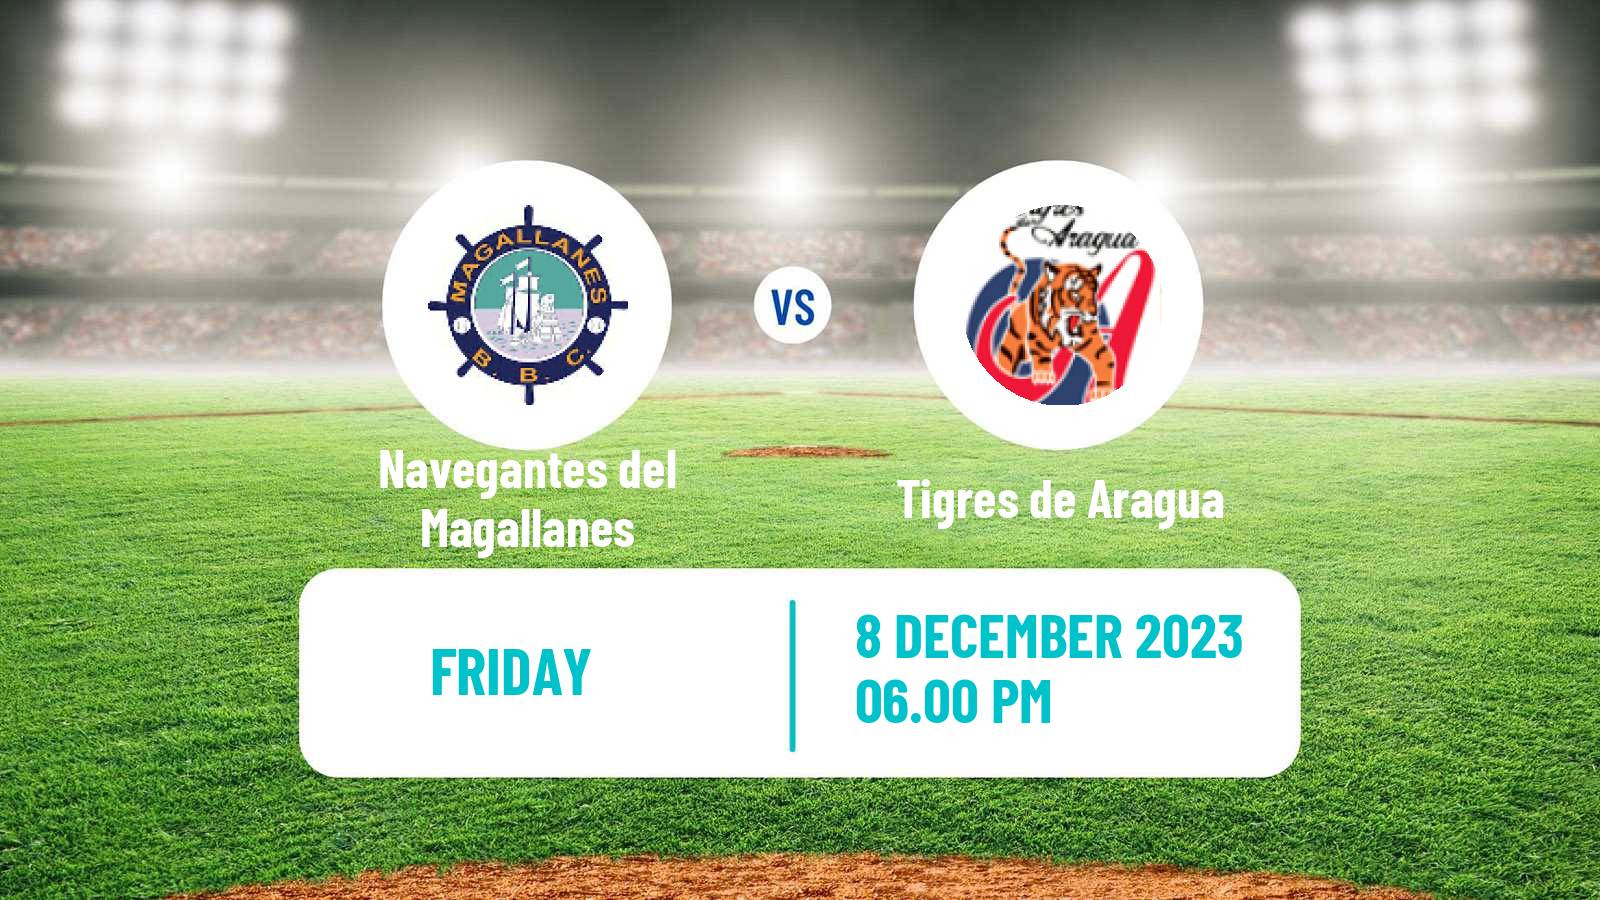 Baseball Venezuelan LVBP Navegantes del Magallanes - Tigres de Aragua